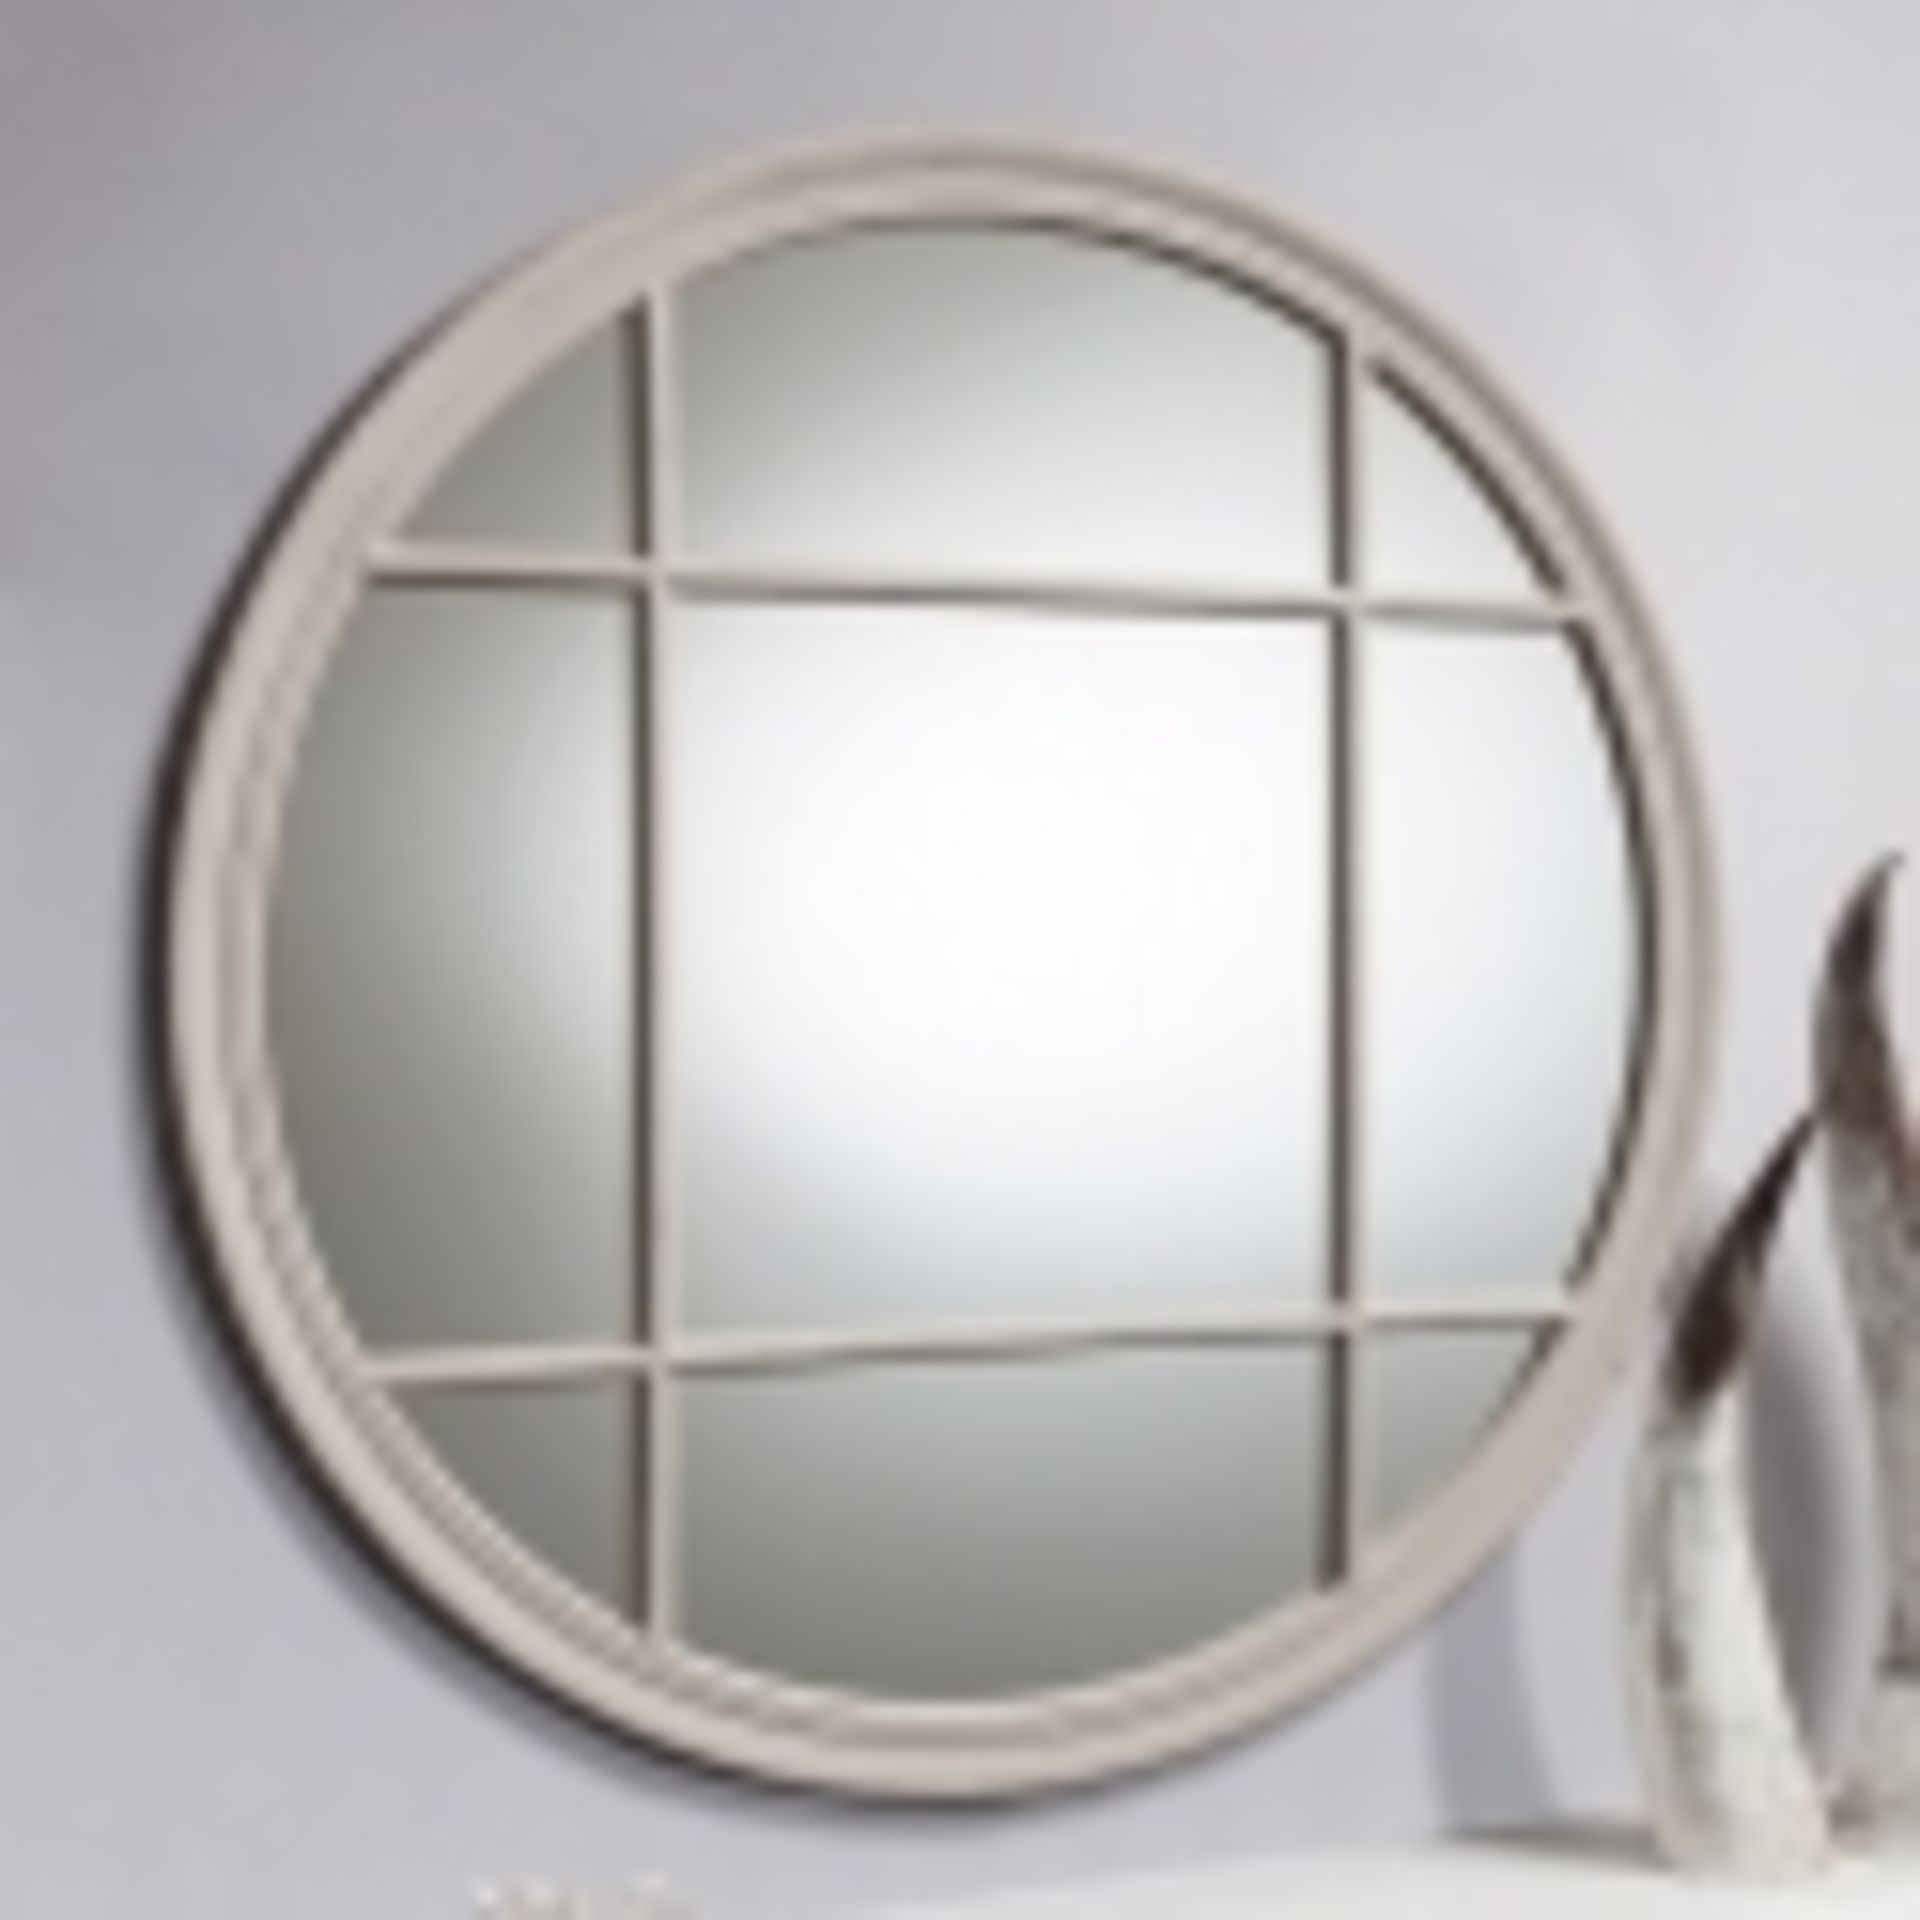 Eccleston Round Mirror Clay 1000x1000mm Versatile, panelled window mirror in a distressed matt taupe